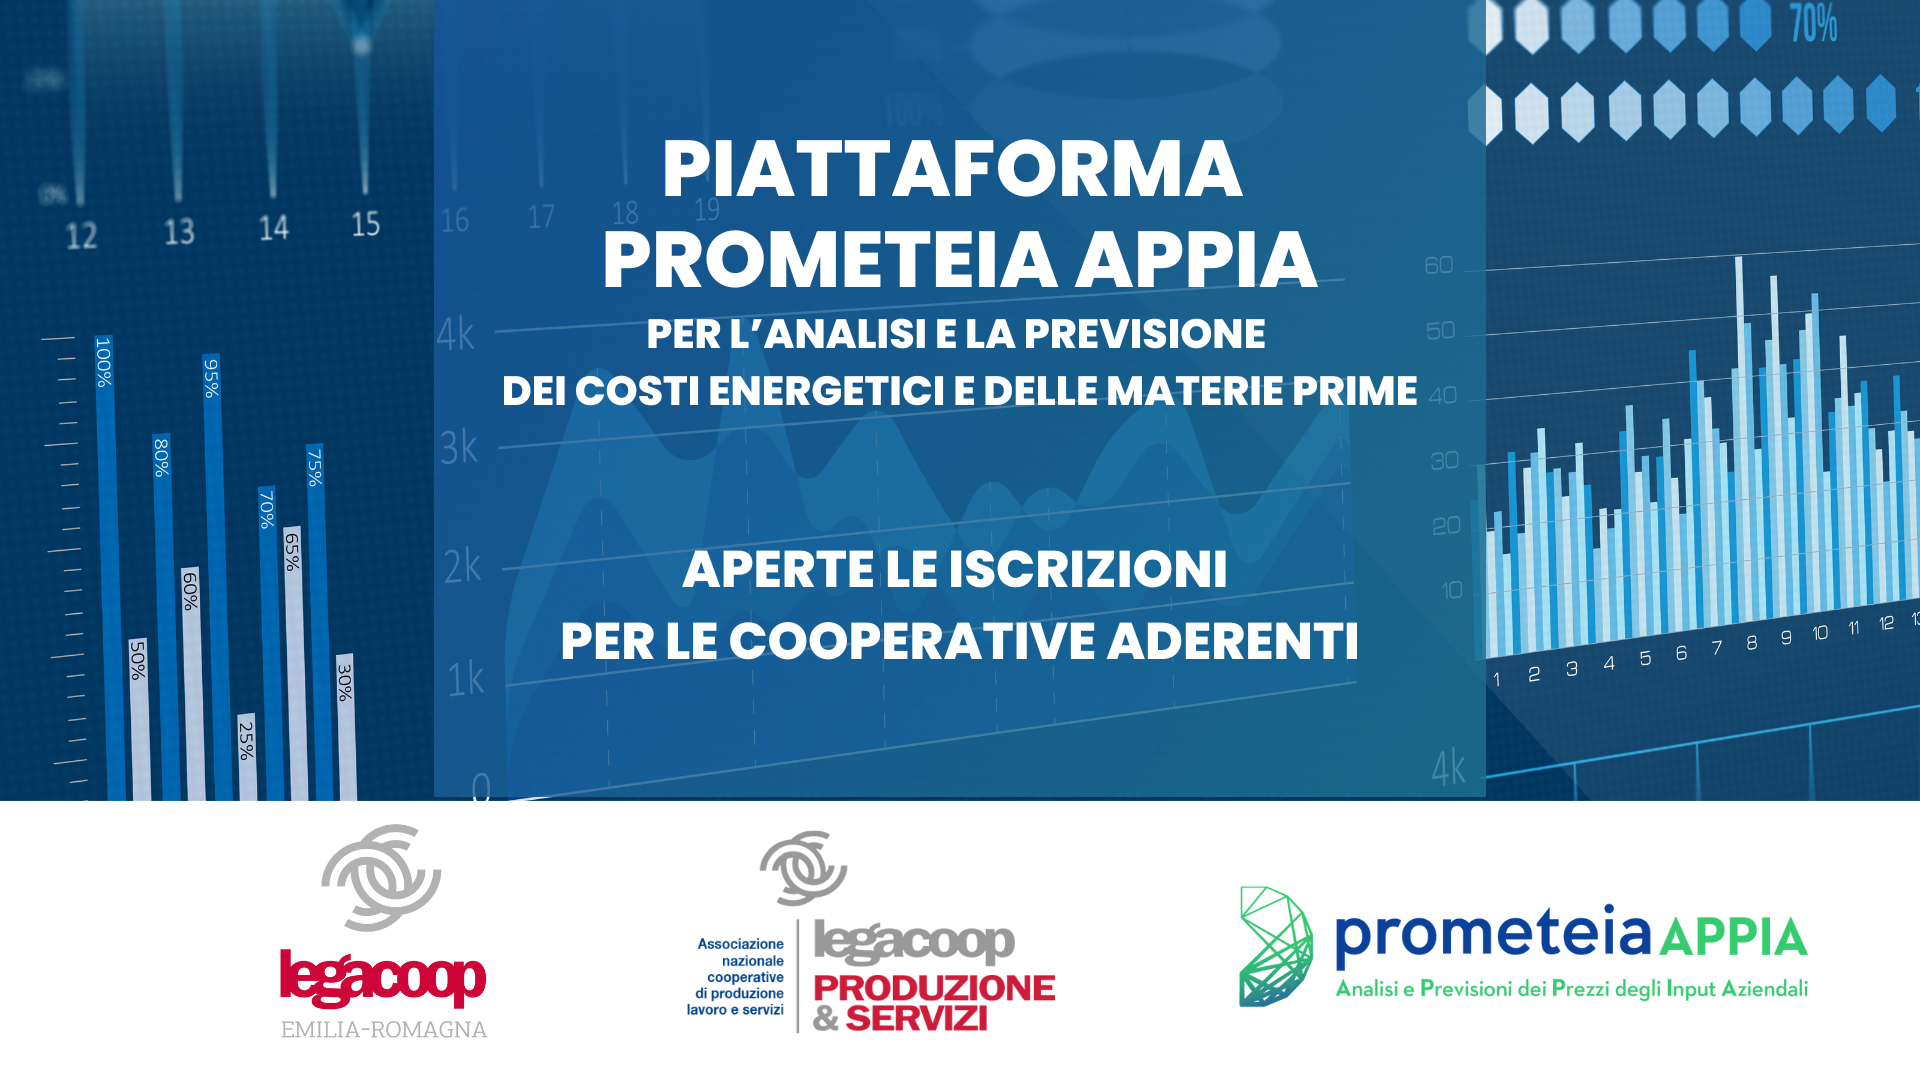 Presentato il portale Prometeia APPIA alle cooperative, al via le iscrizioni